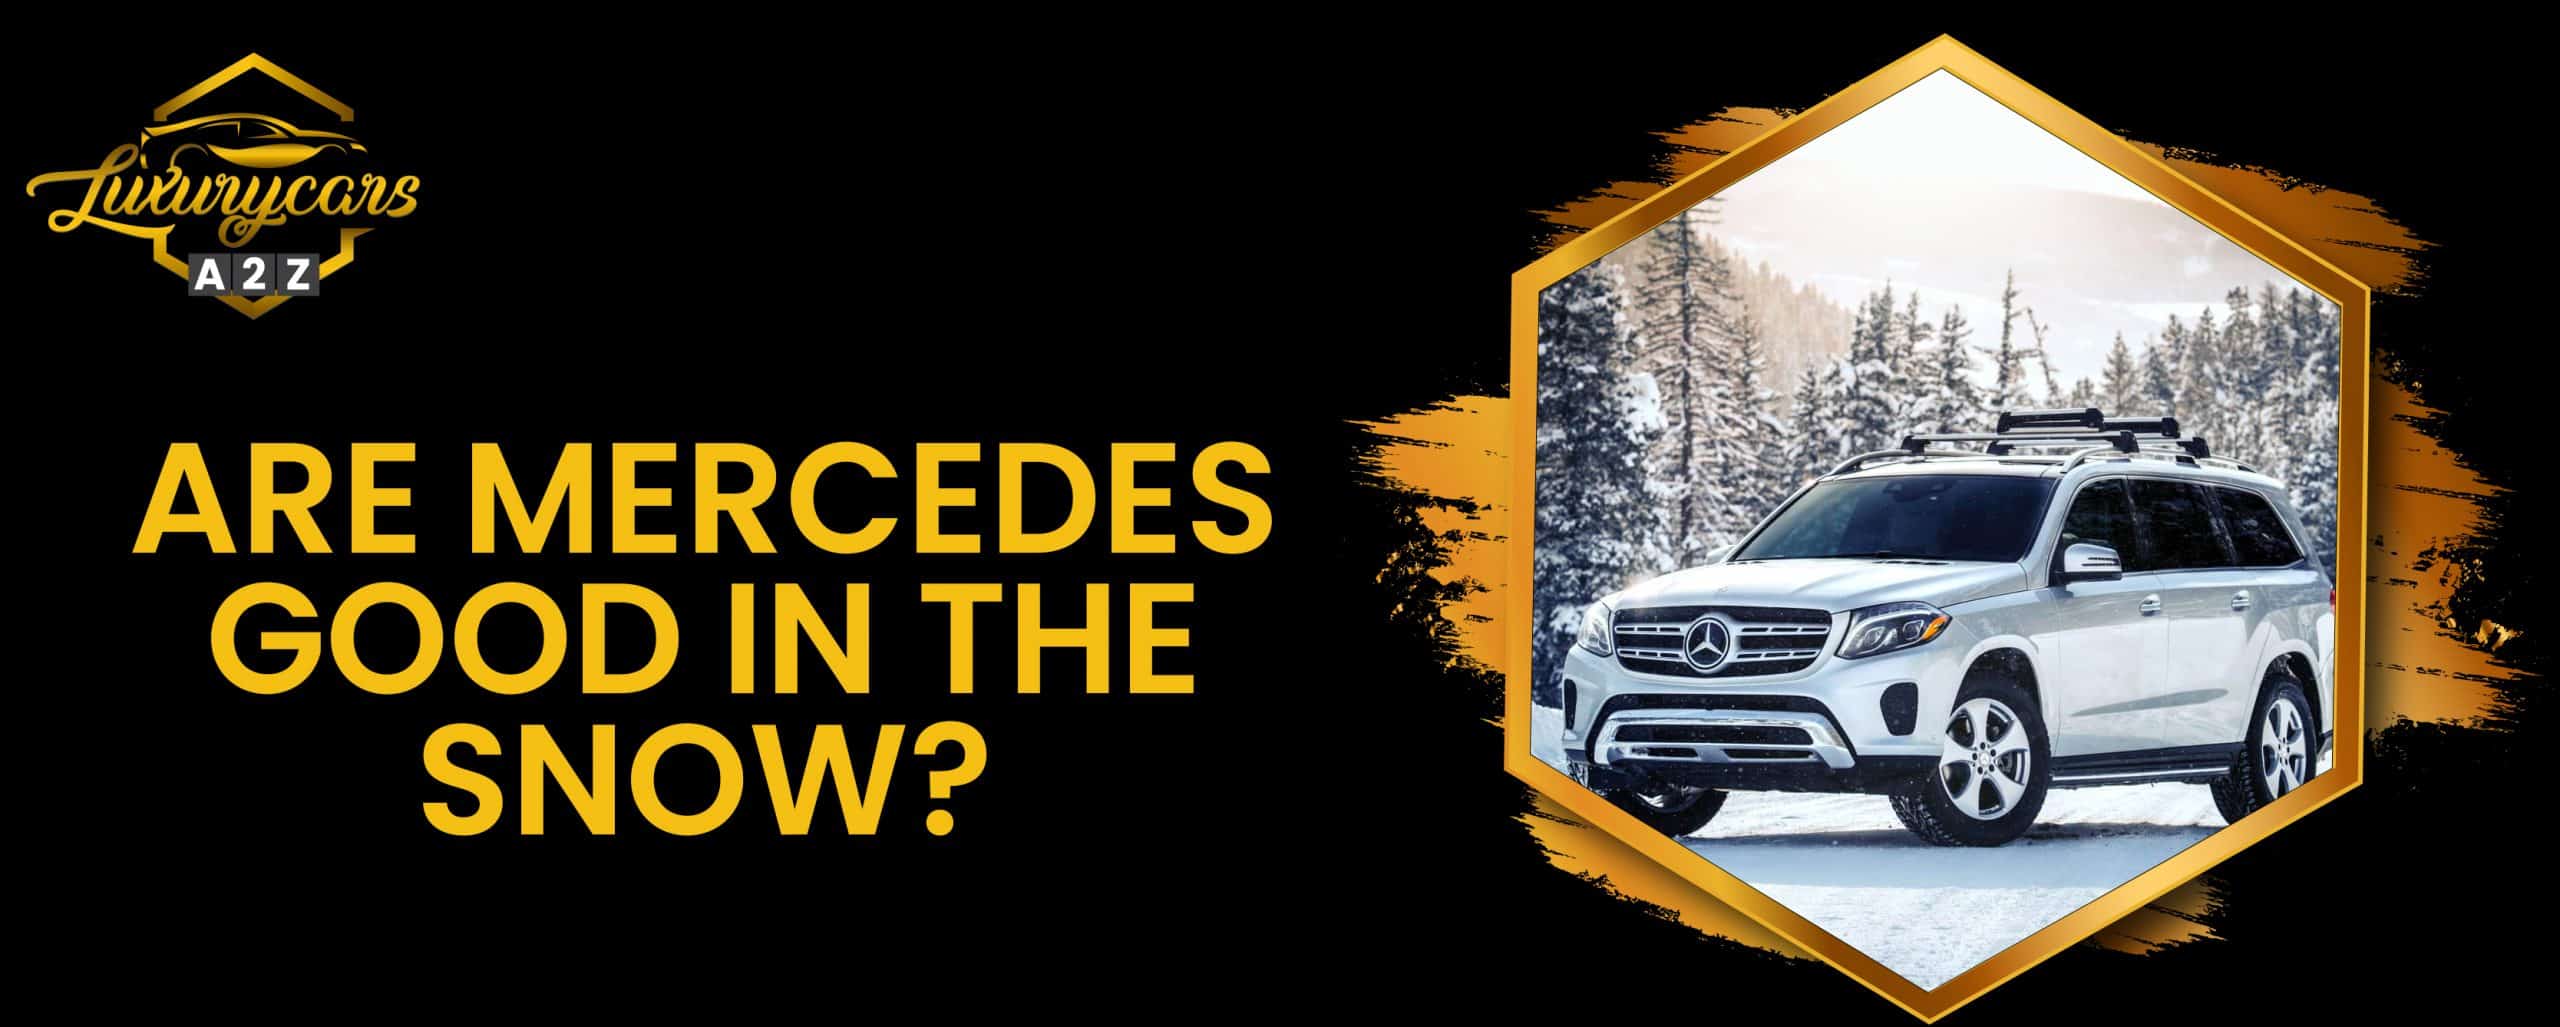 Les Mercedes sont-elles bonnes dans la neige ?